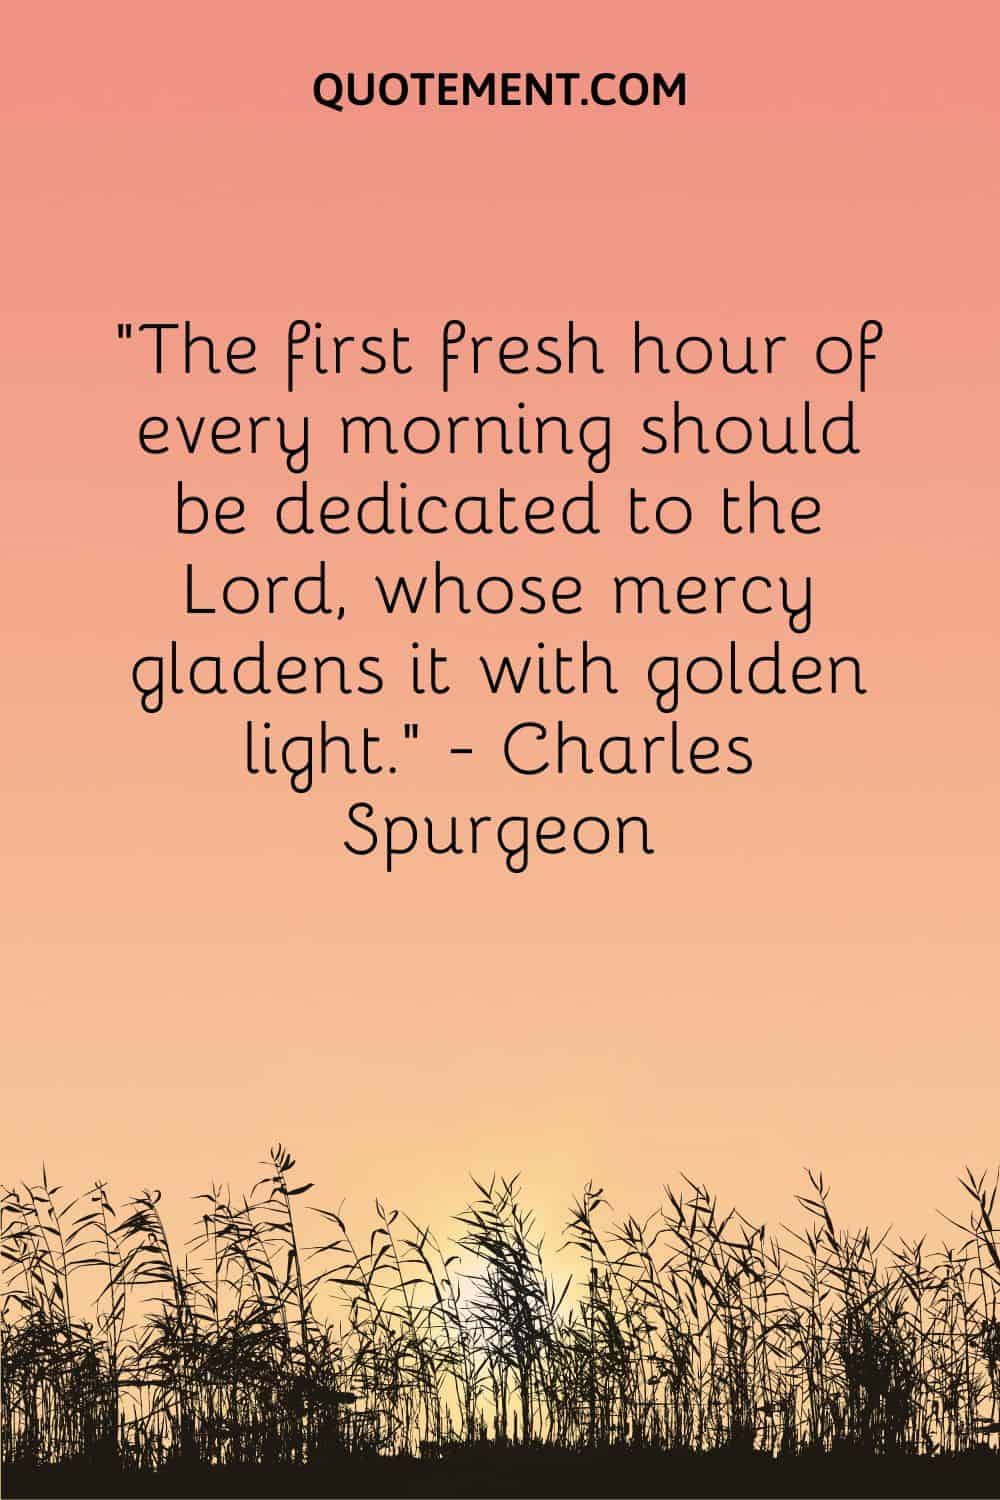 La primera hora fresca de cada mañana debe dedicarse al Señor, cuya misericordia la alegra con luz dorada